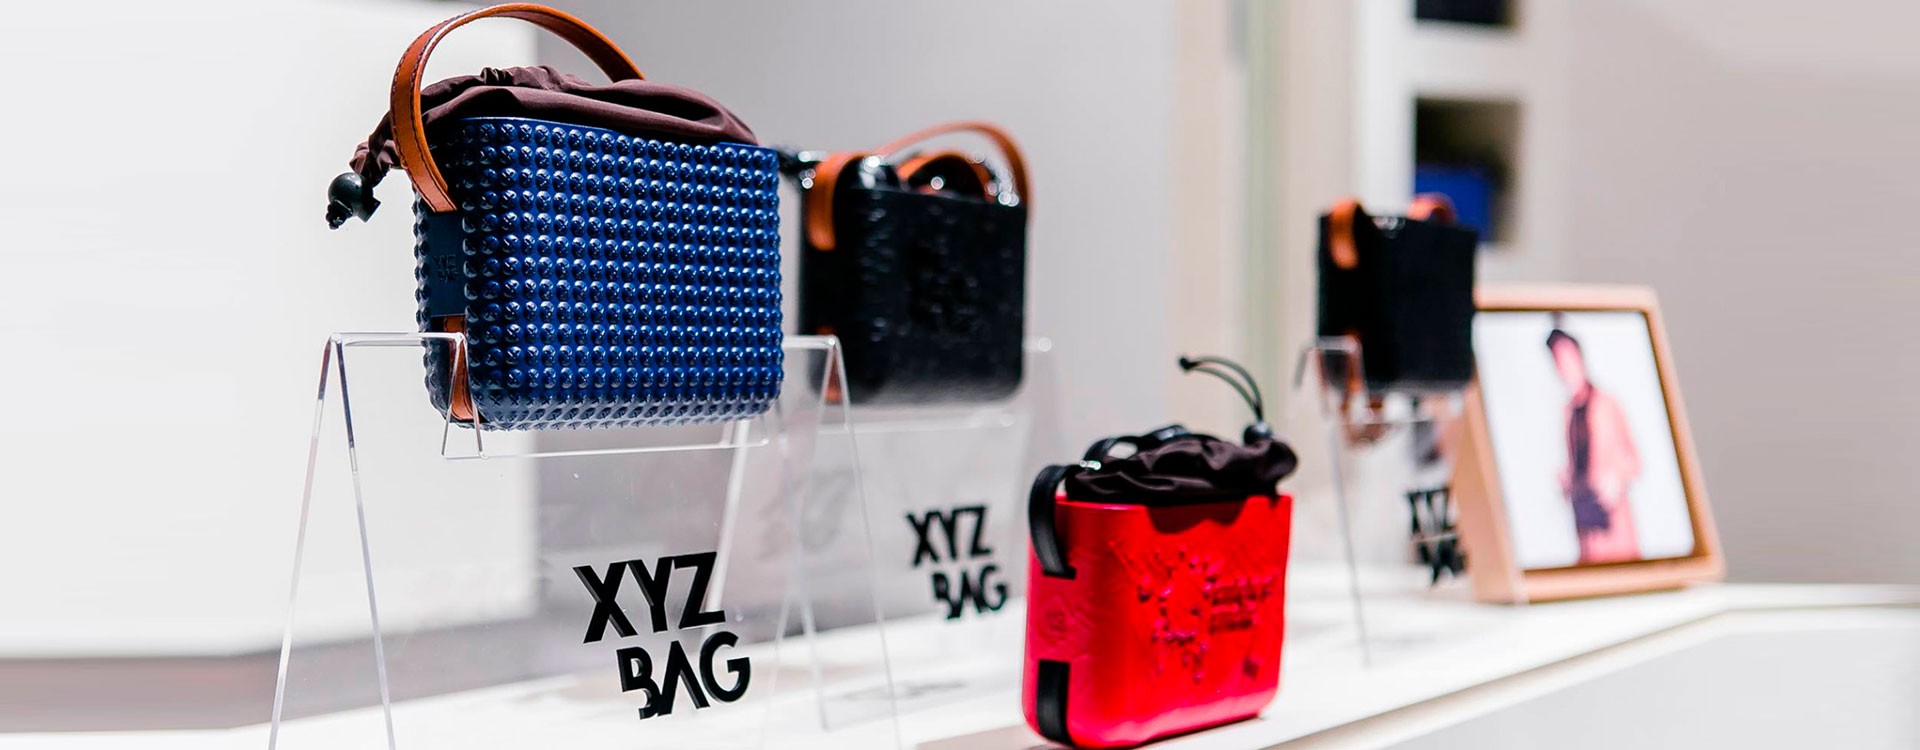 Італійський бренд XYZbag створює унікальні сумки за допомогою 3D друку